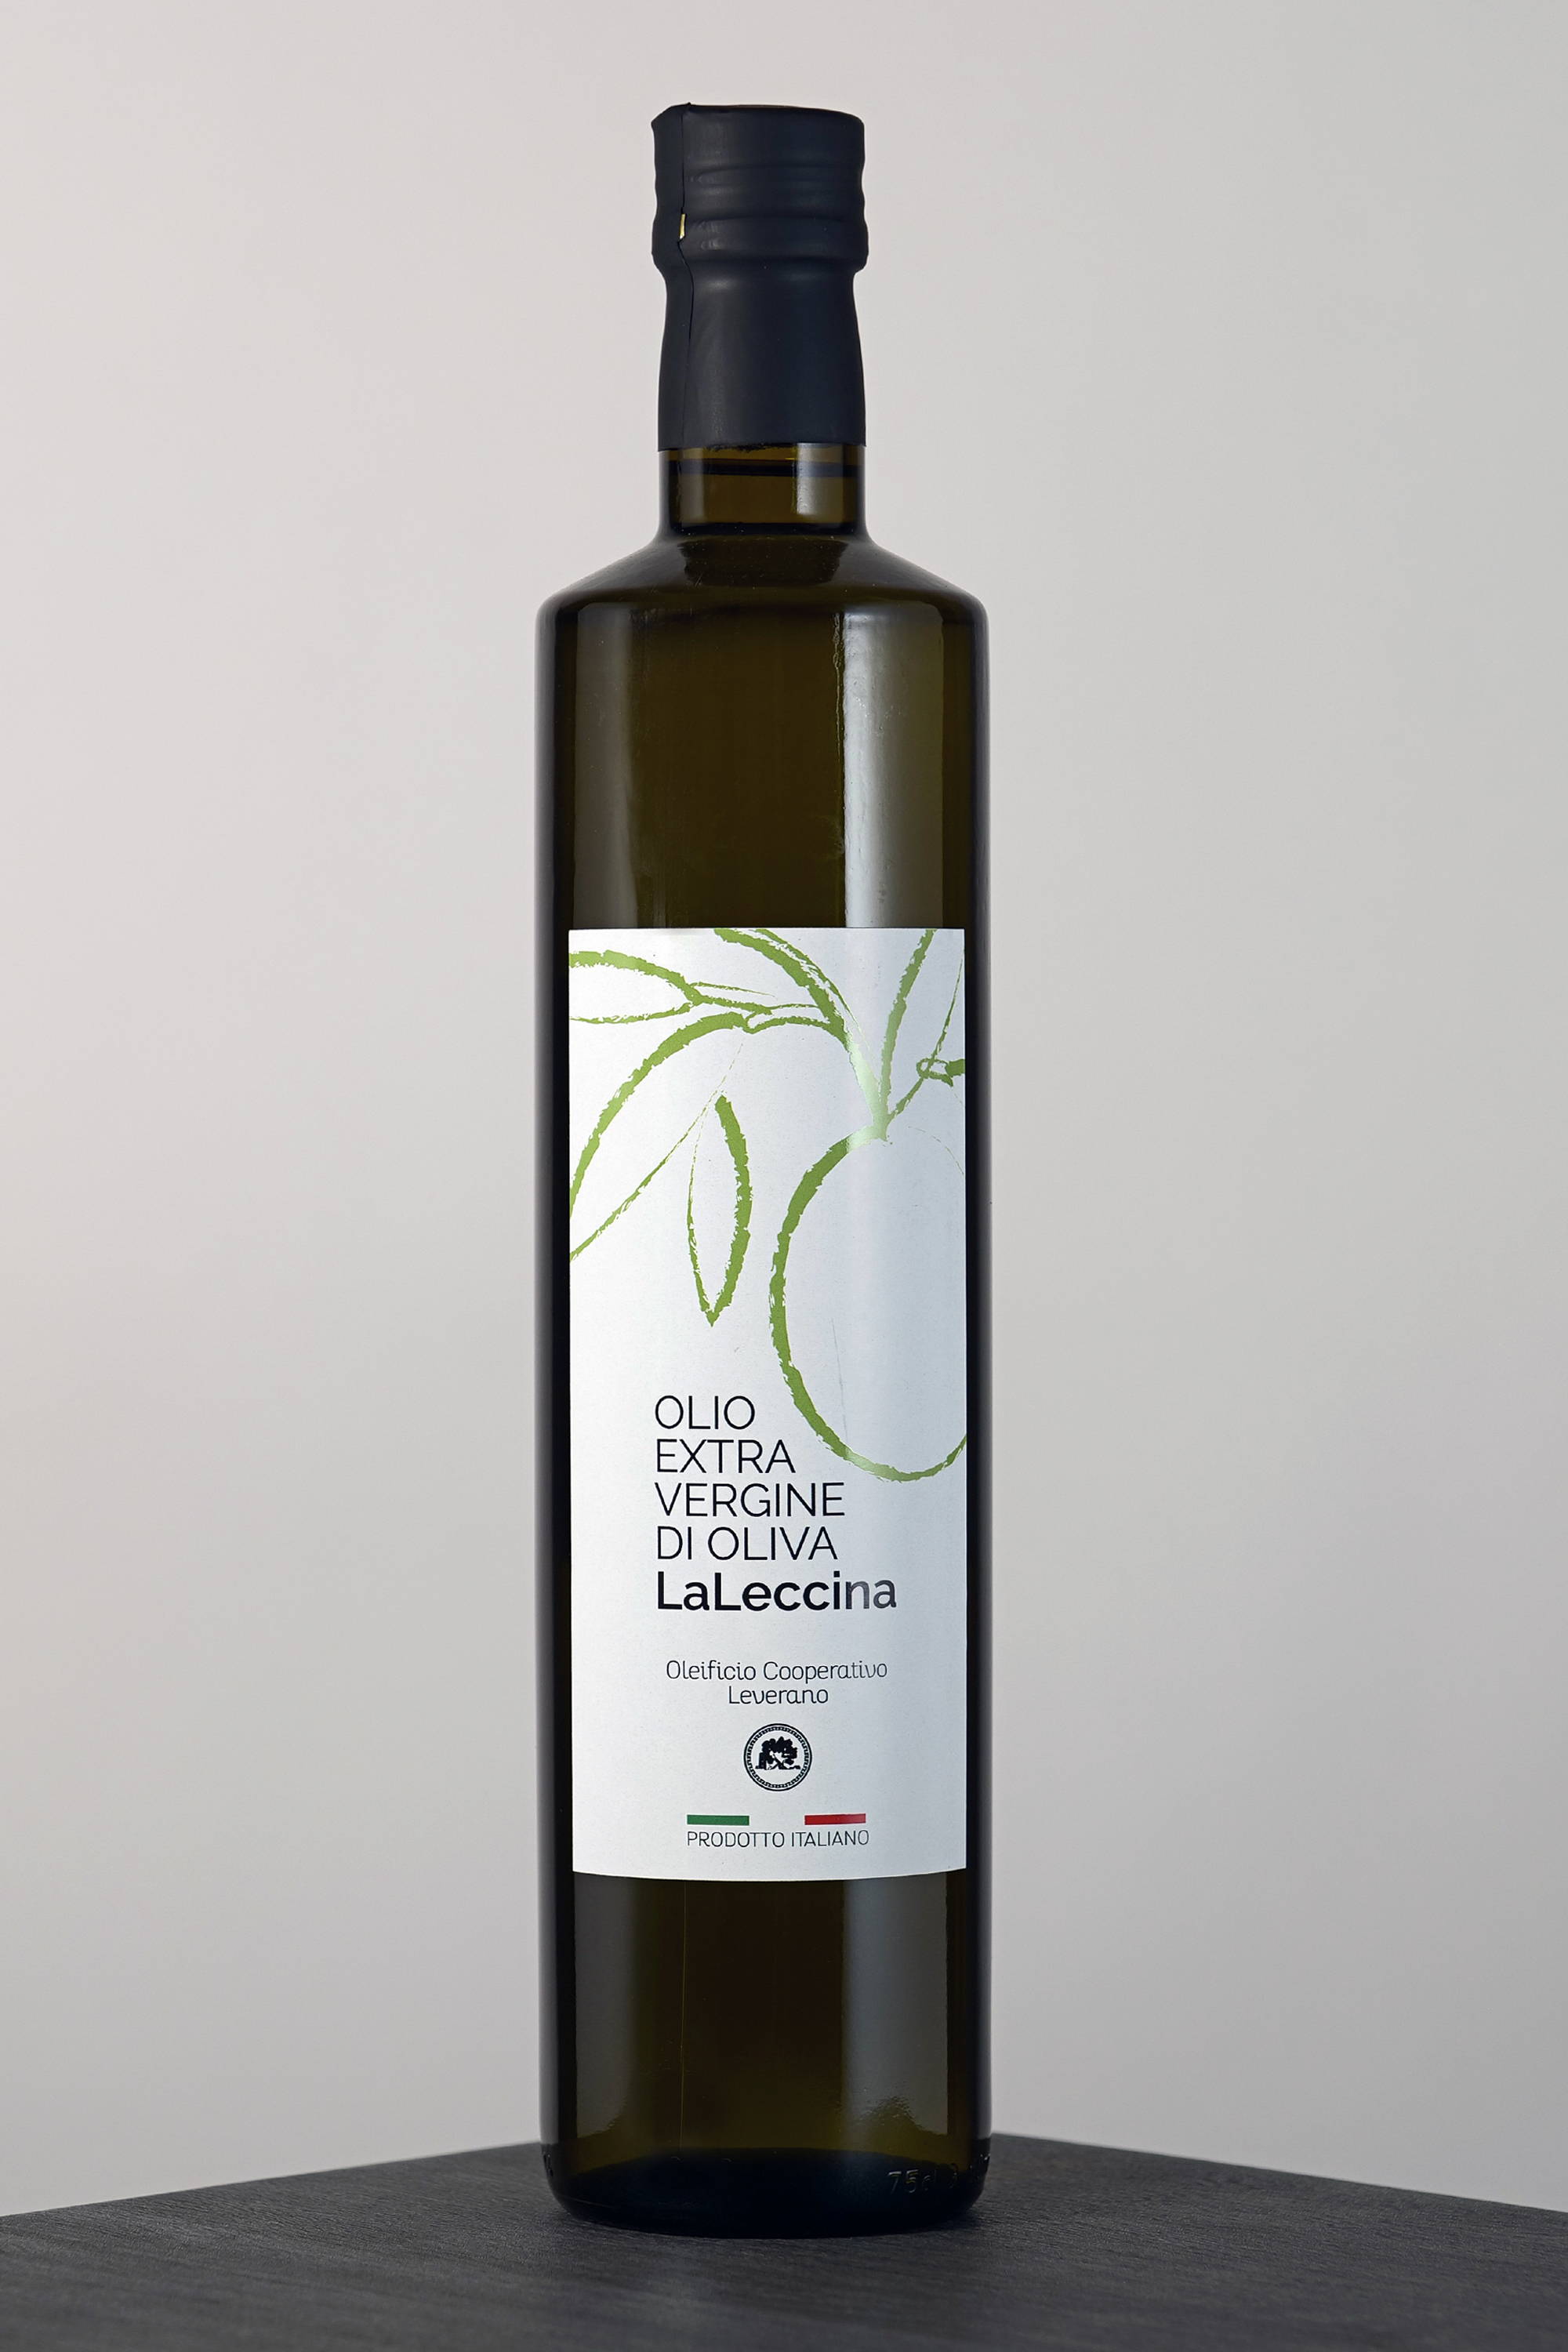 Extra virgin olive oil "LaLeccina" - lt. 0,75